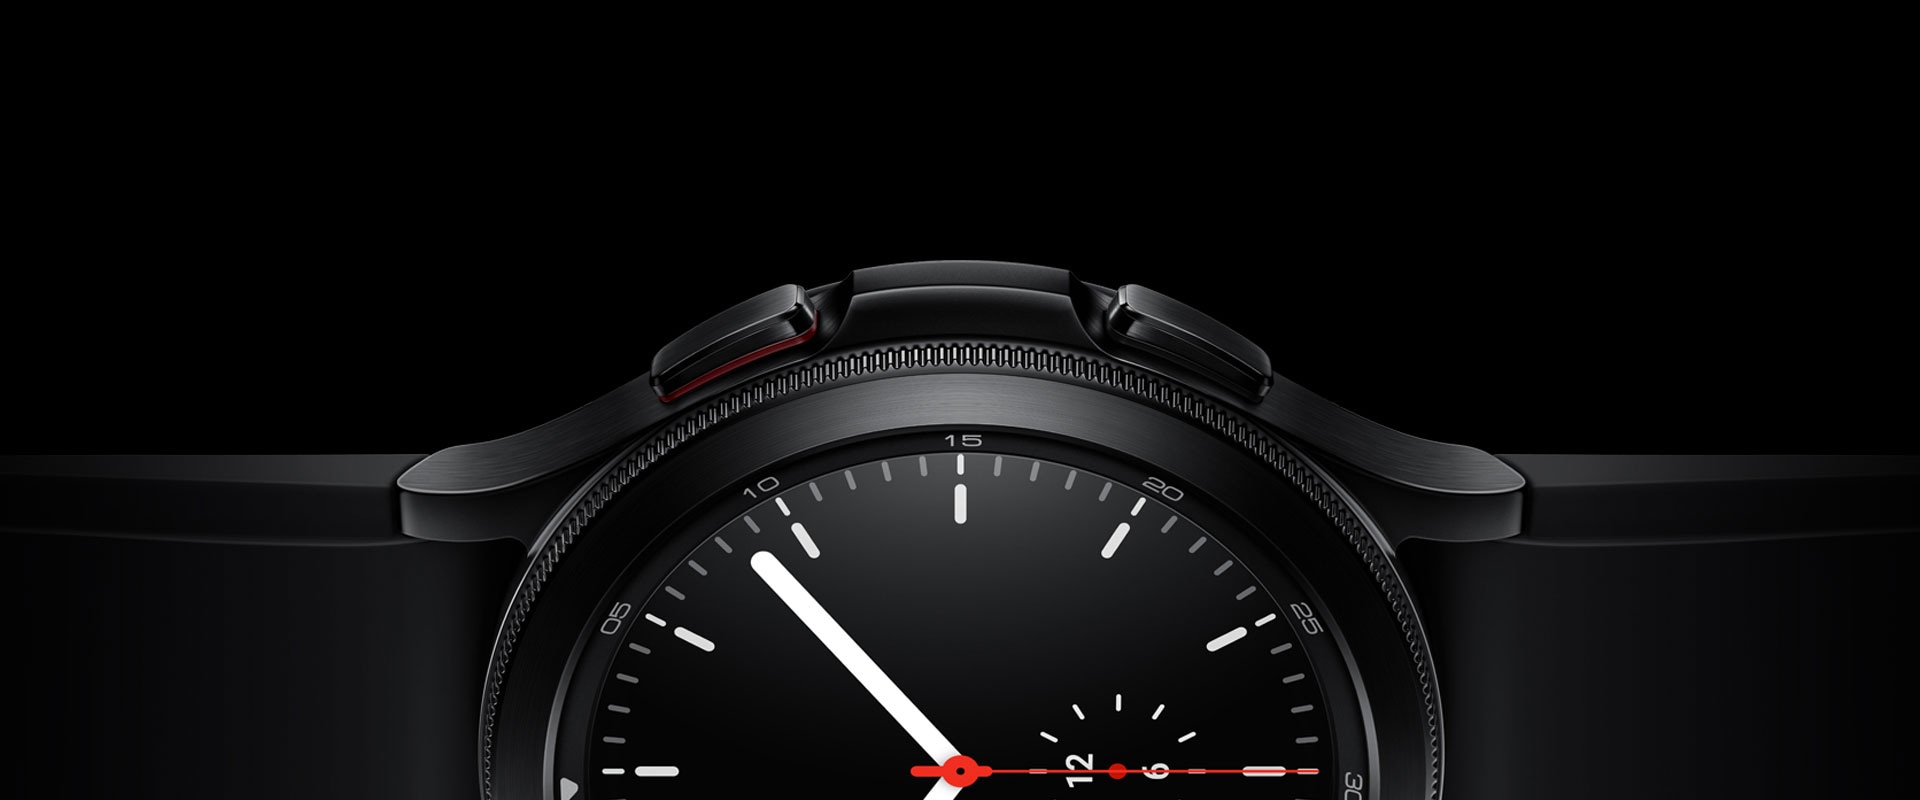 يُعرض بصورة بارزة نصف واجهة الساعة Galaxy Watch4 Classic سوداء اللون، مع التركيز على الحواف والمواد وشاشة واجهة الساعة البسيطة التي تظهر الوقت.